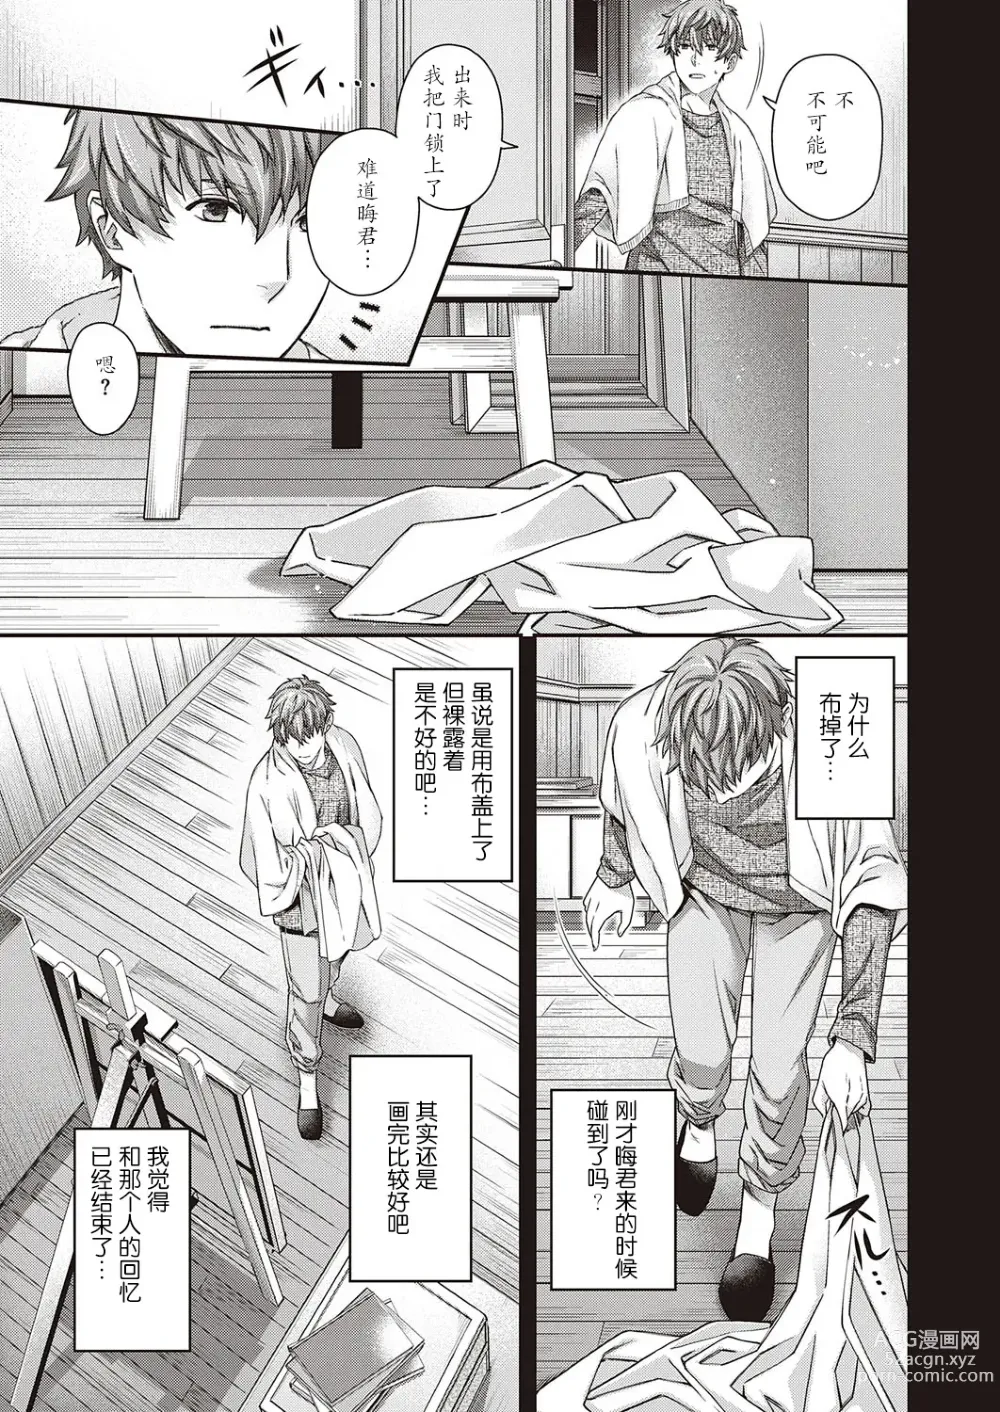 Page 7 of manga Eigetsu no Kemono